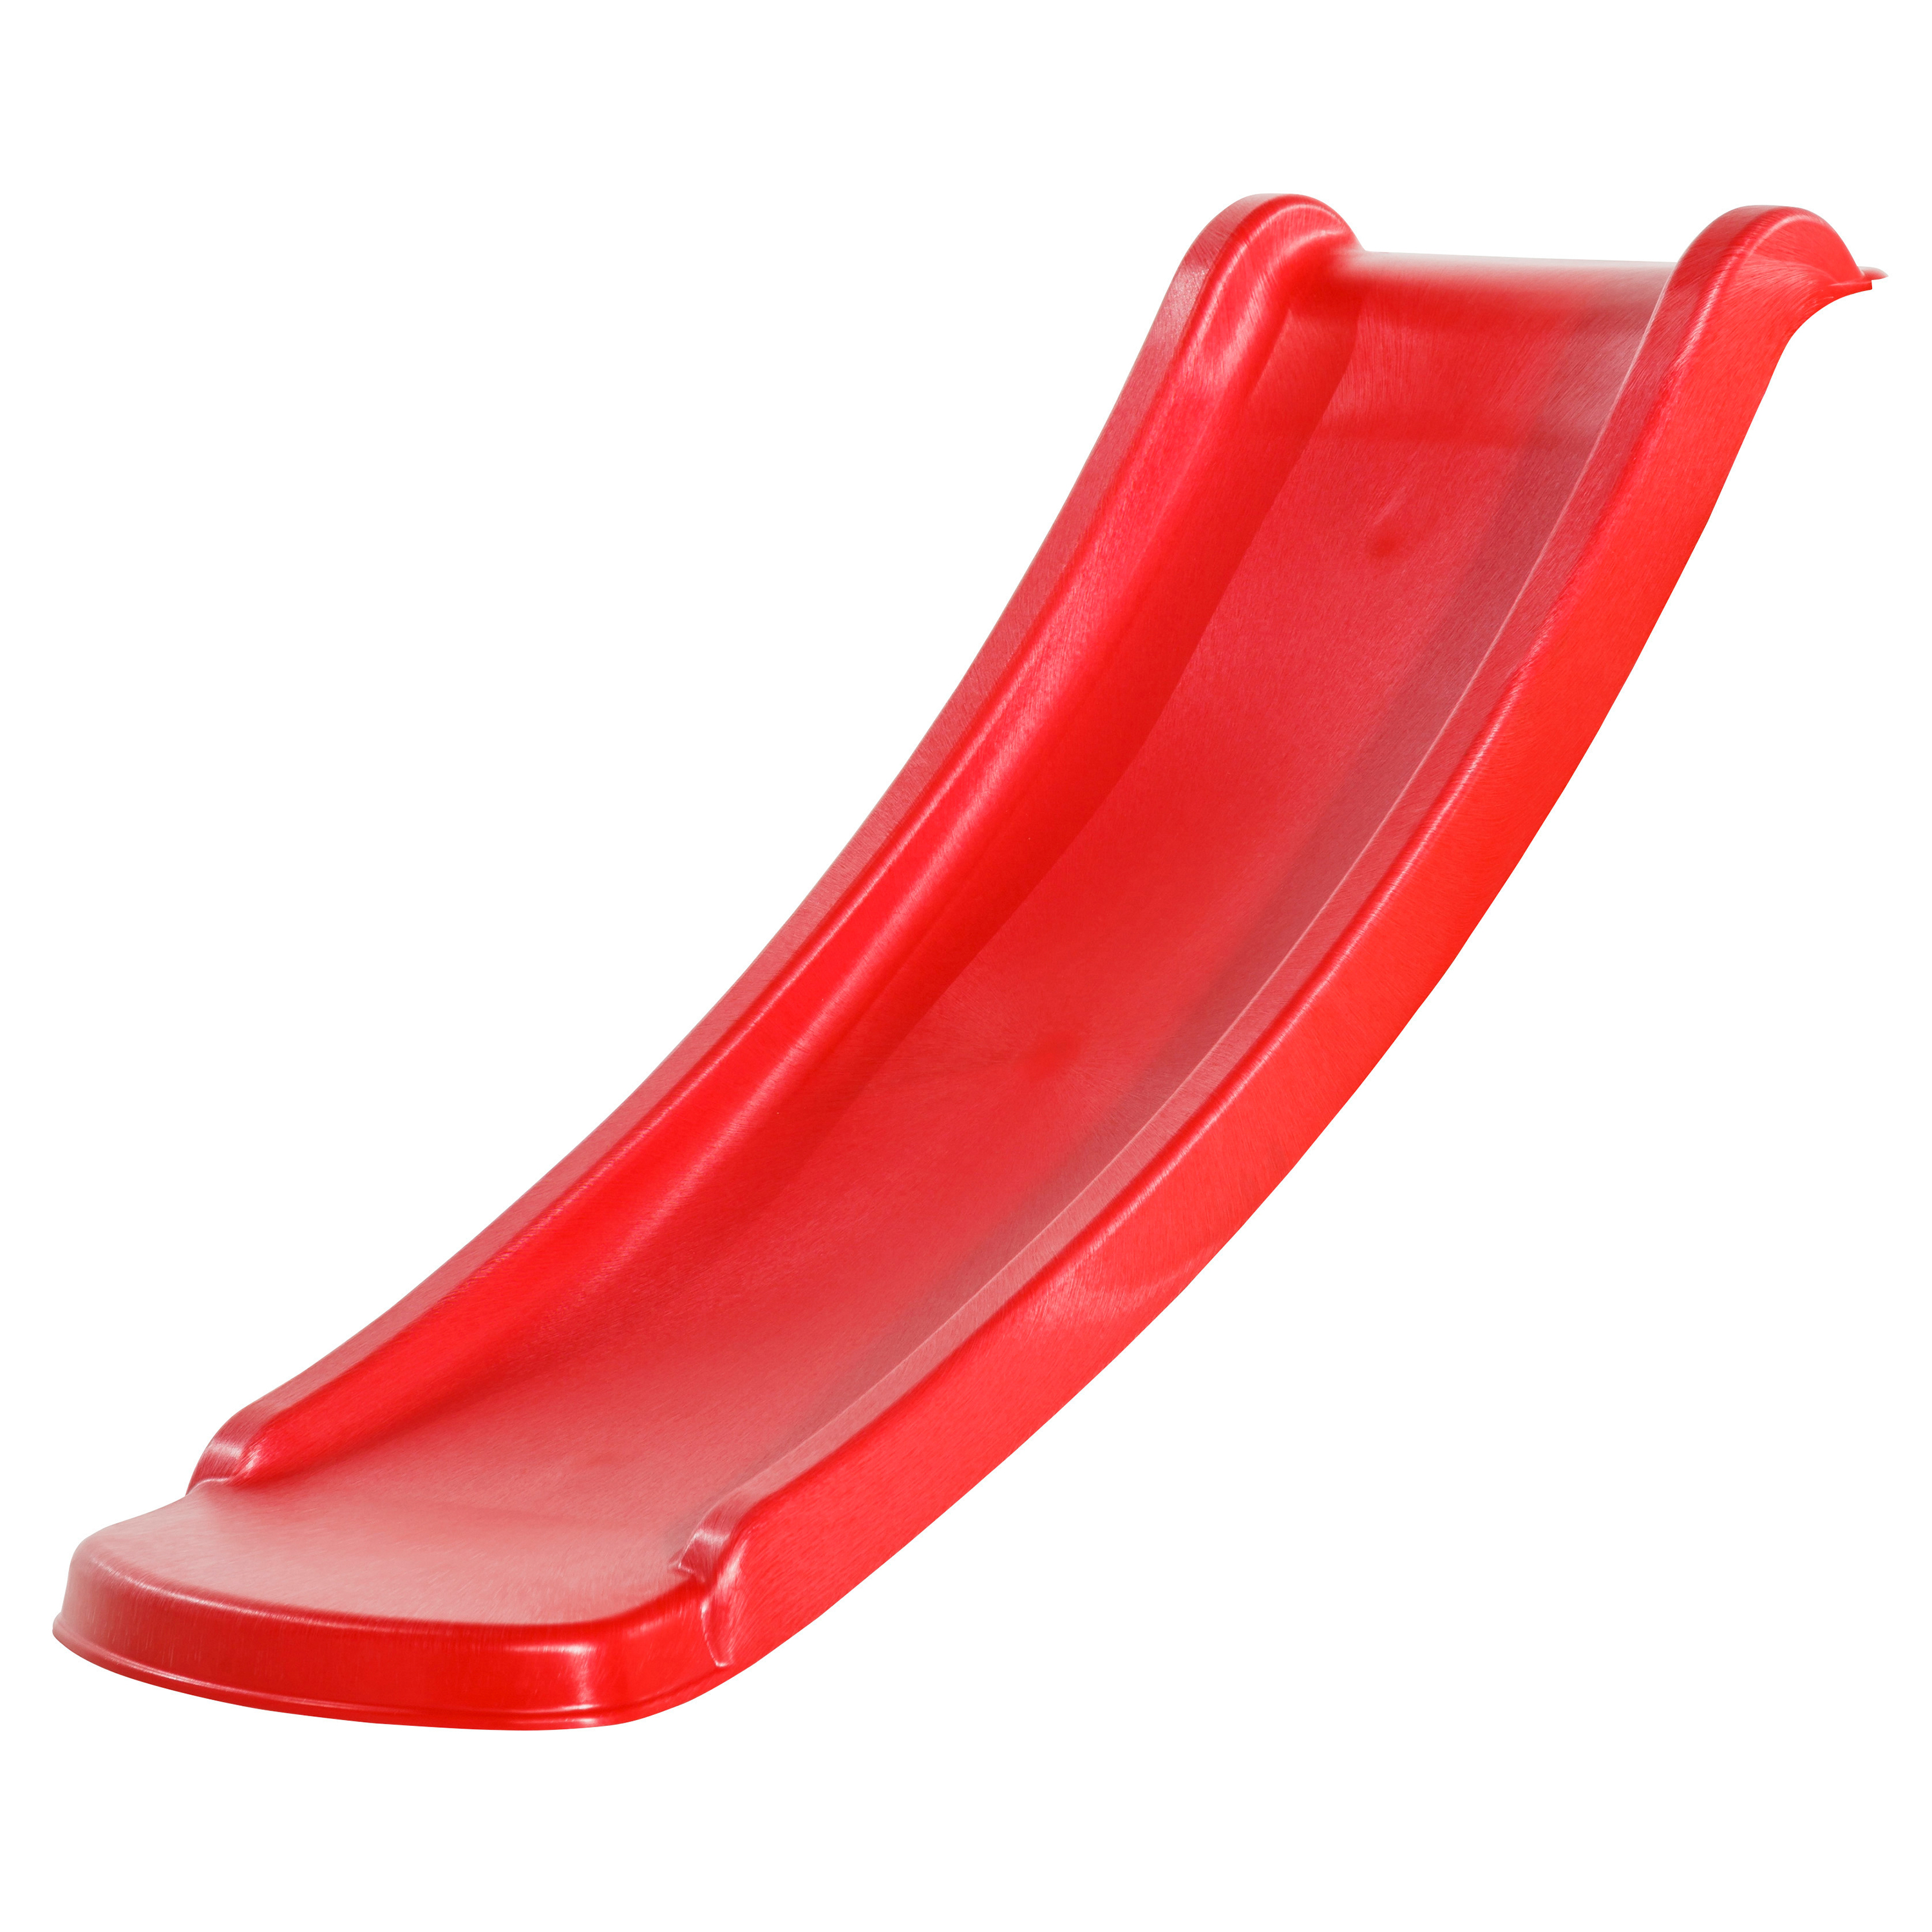 Sky120 Slide Red - 118 cm